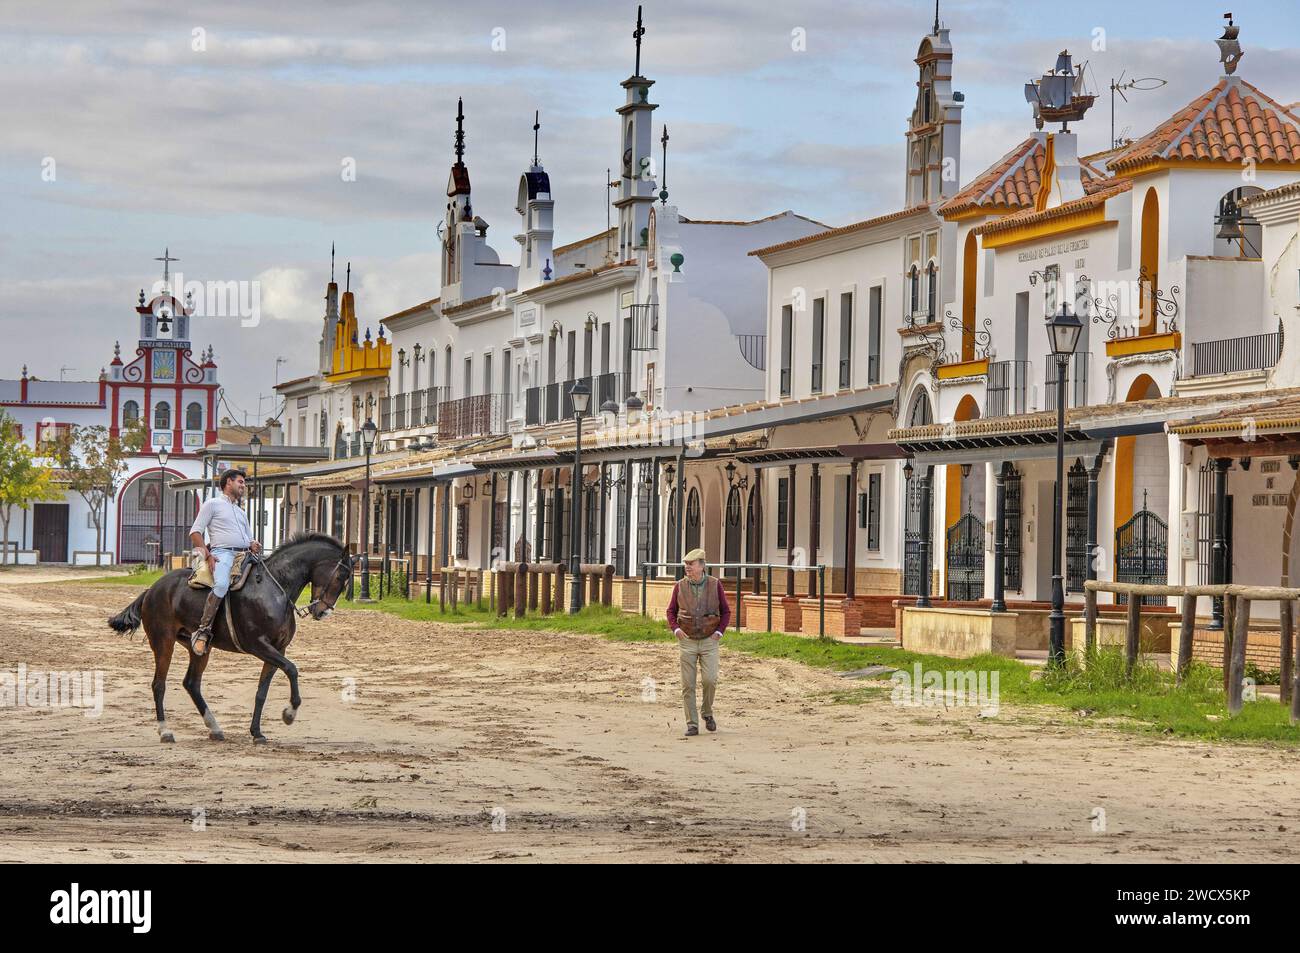 Spanien, Andalusien, El Rocío, Reiter auf einem schwarzen Pferd neben einem alten Mann mit Baskenmütze in einer Sandstraße, die von Hermandaden gesäumt ist, den Häusern katholischer Bruderschaften Stockfoto